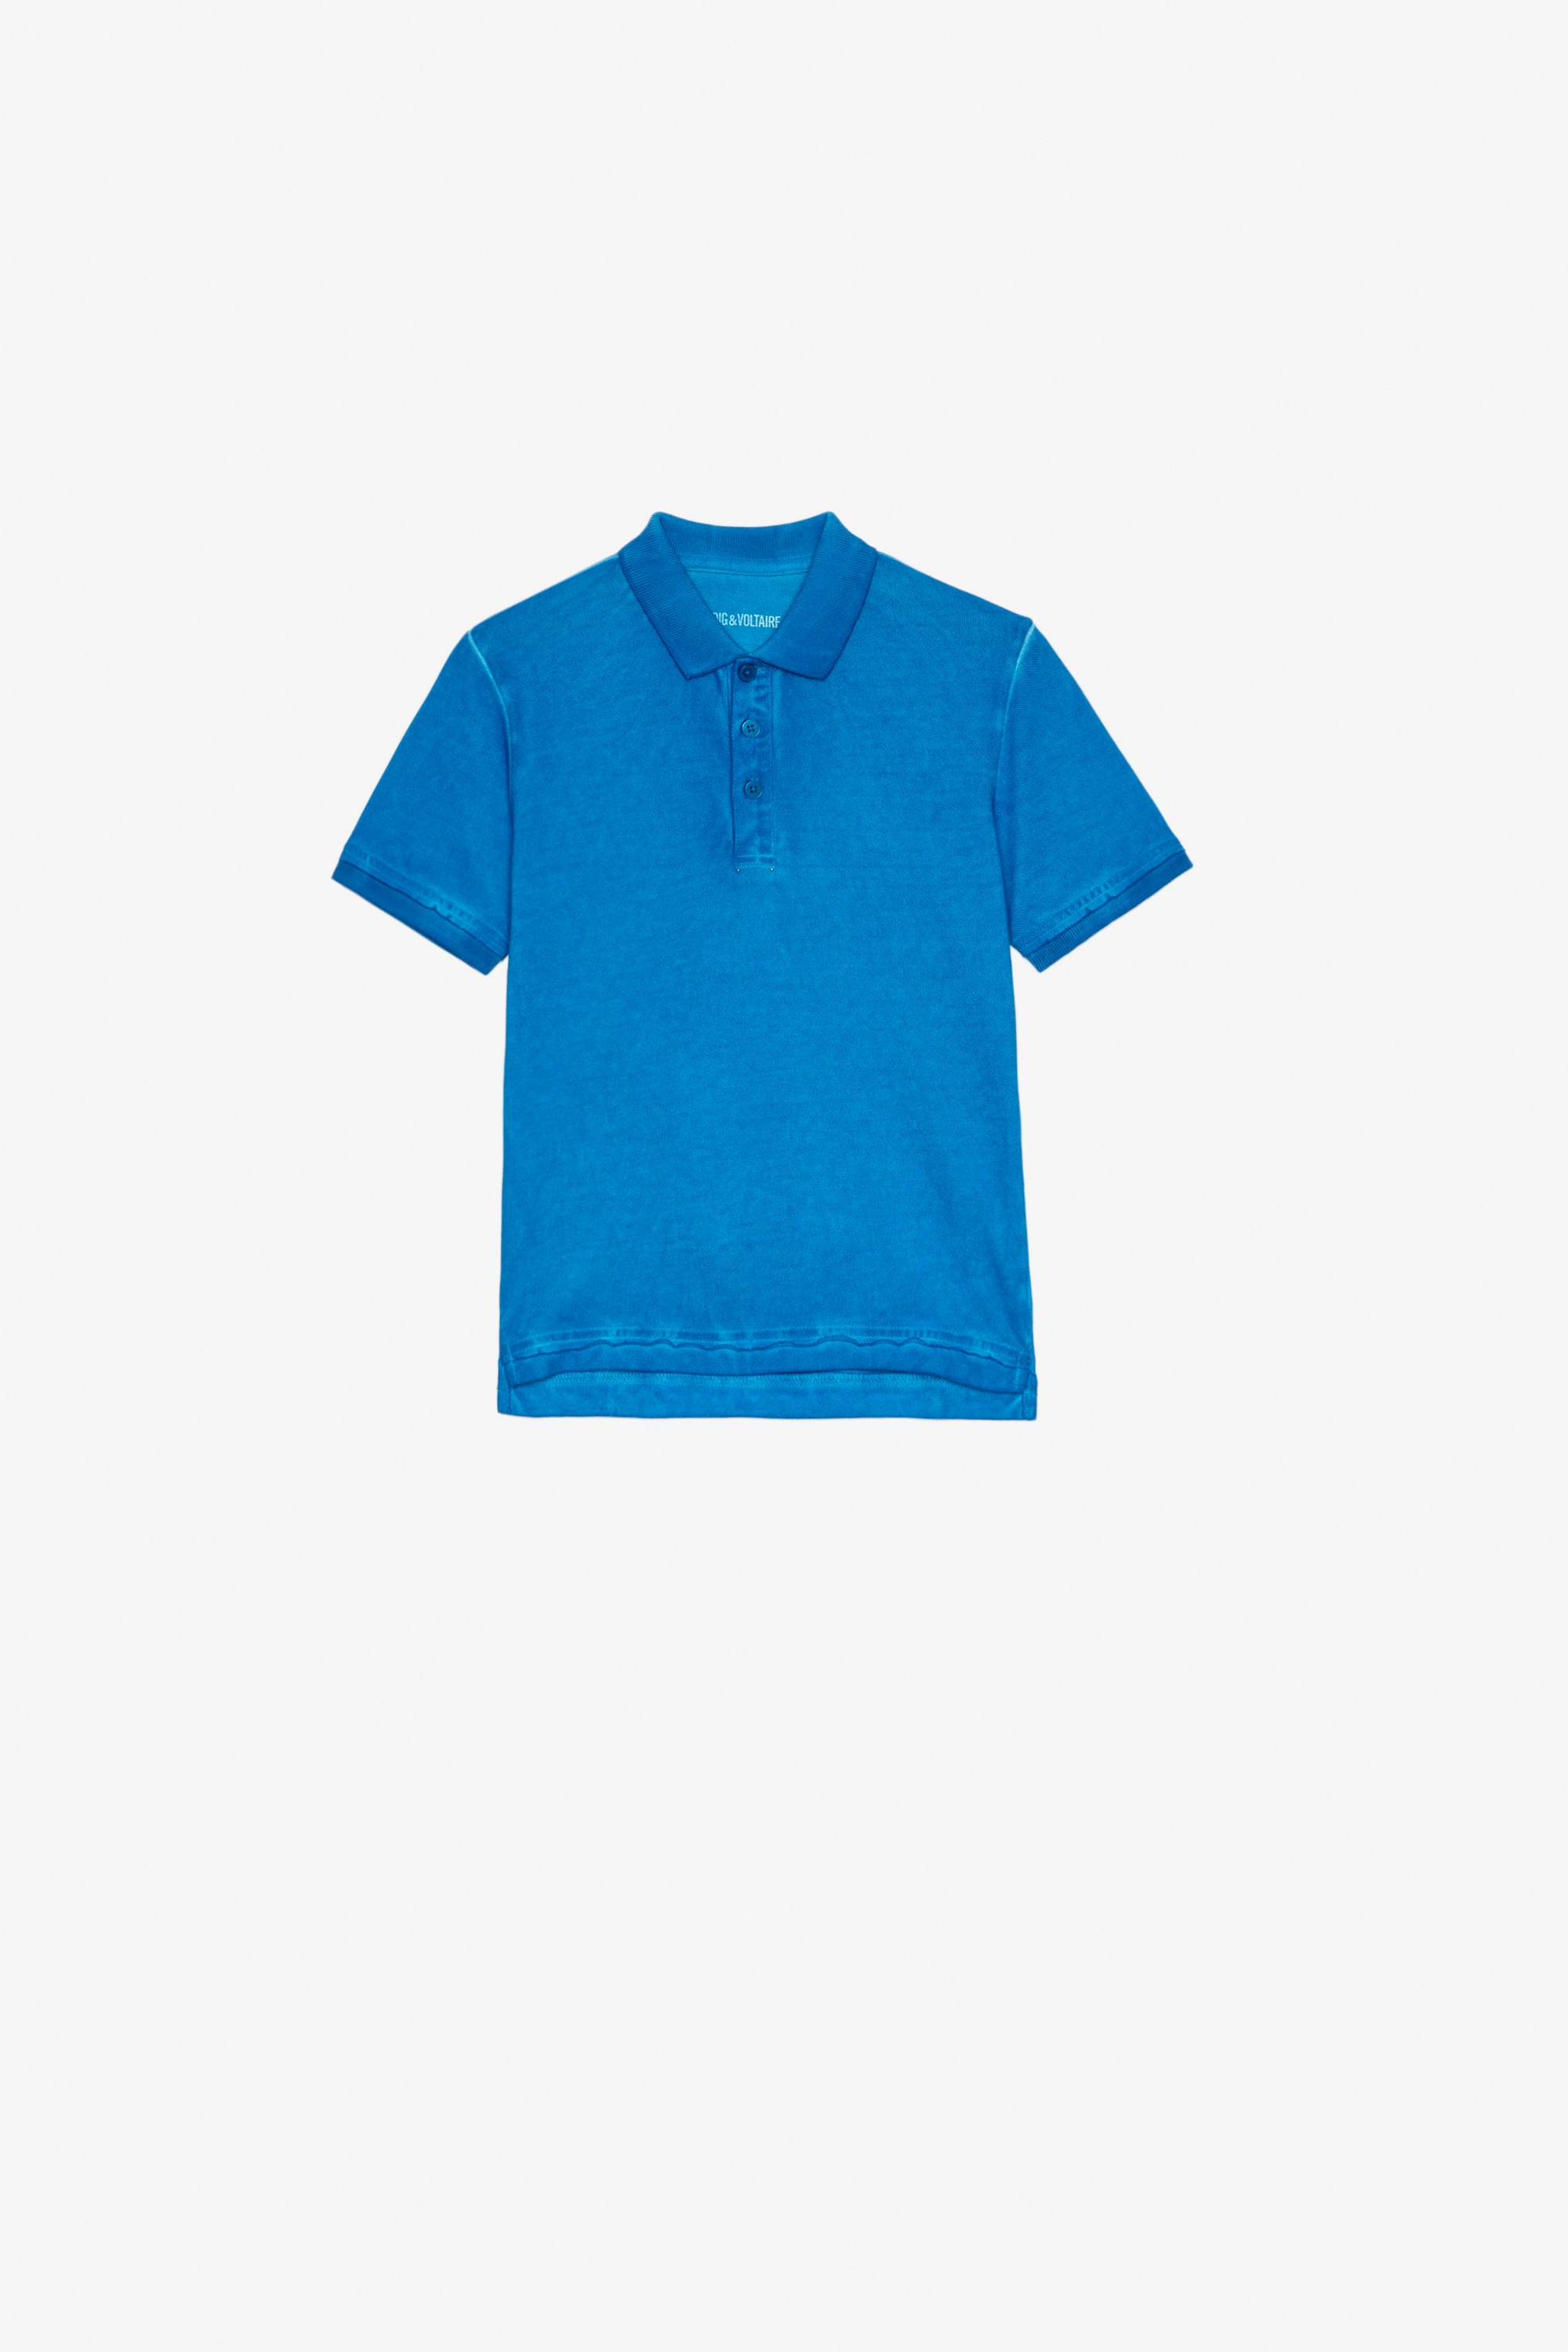 Kinder-Poloshirt Trot Kinder-Poloshirt aus blauer Baumwolle mit Illustration auf der Rückseite